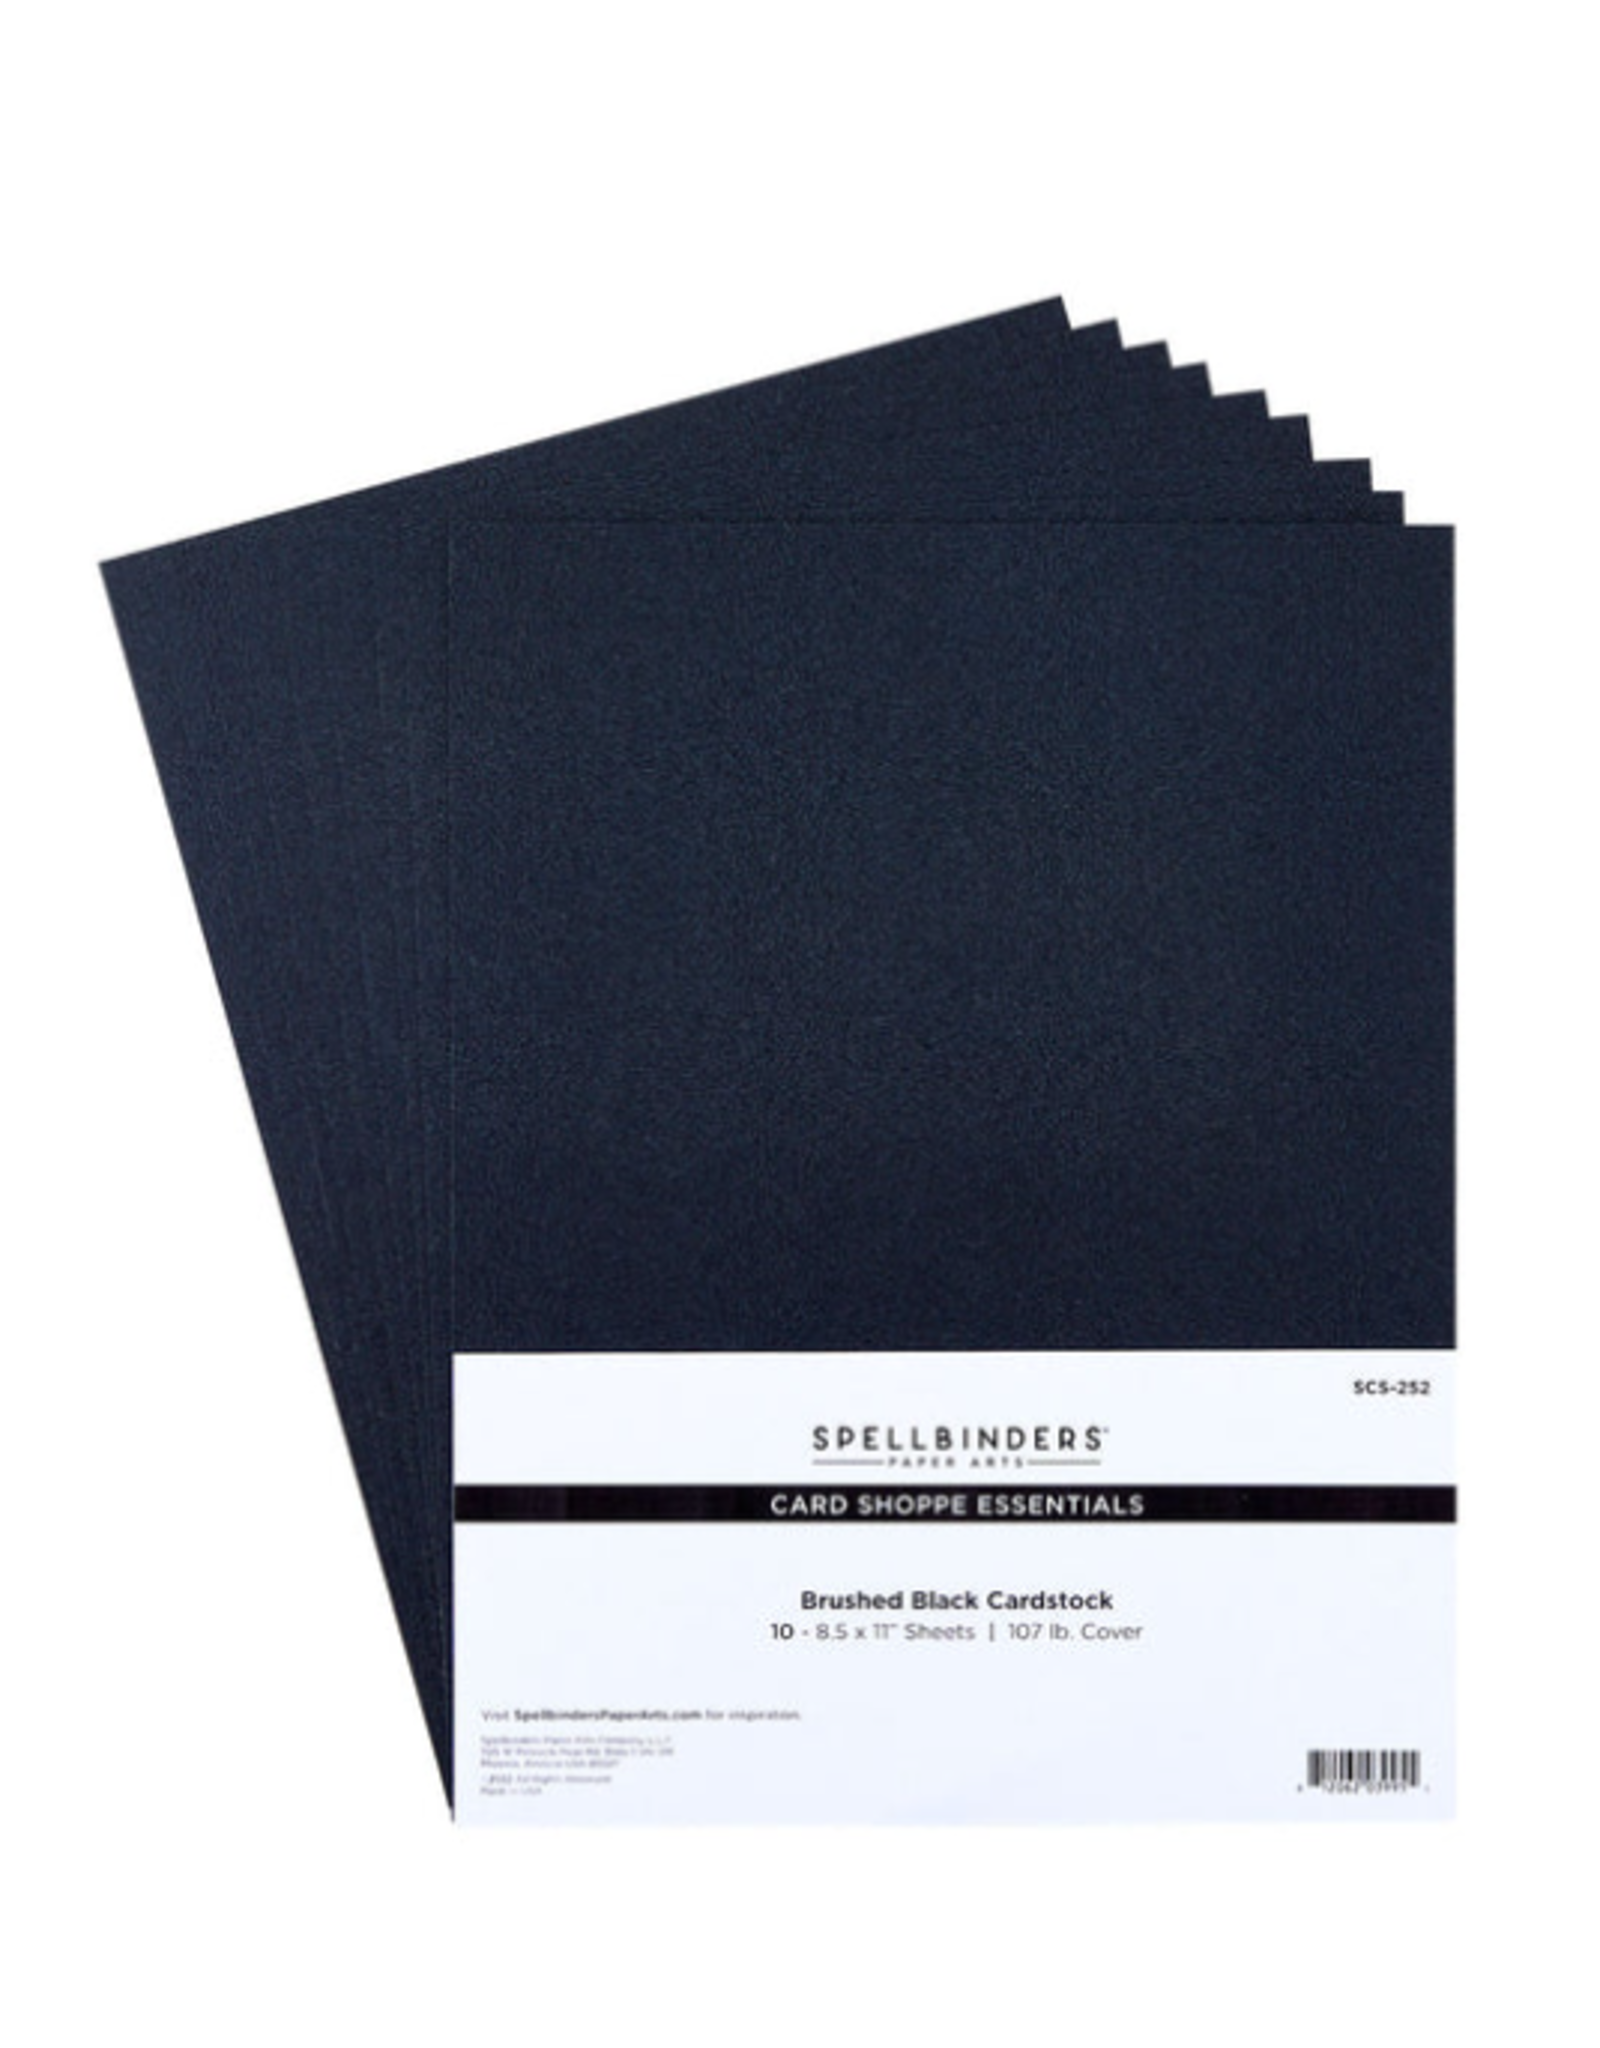 SPELLBINDERS SPELLBINDERS BRUSHED BLACK CARD SHOPPE ESSENTIALS CARDSTOCK 8.5x11 10/PK